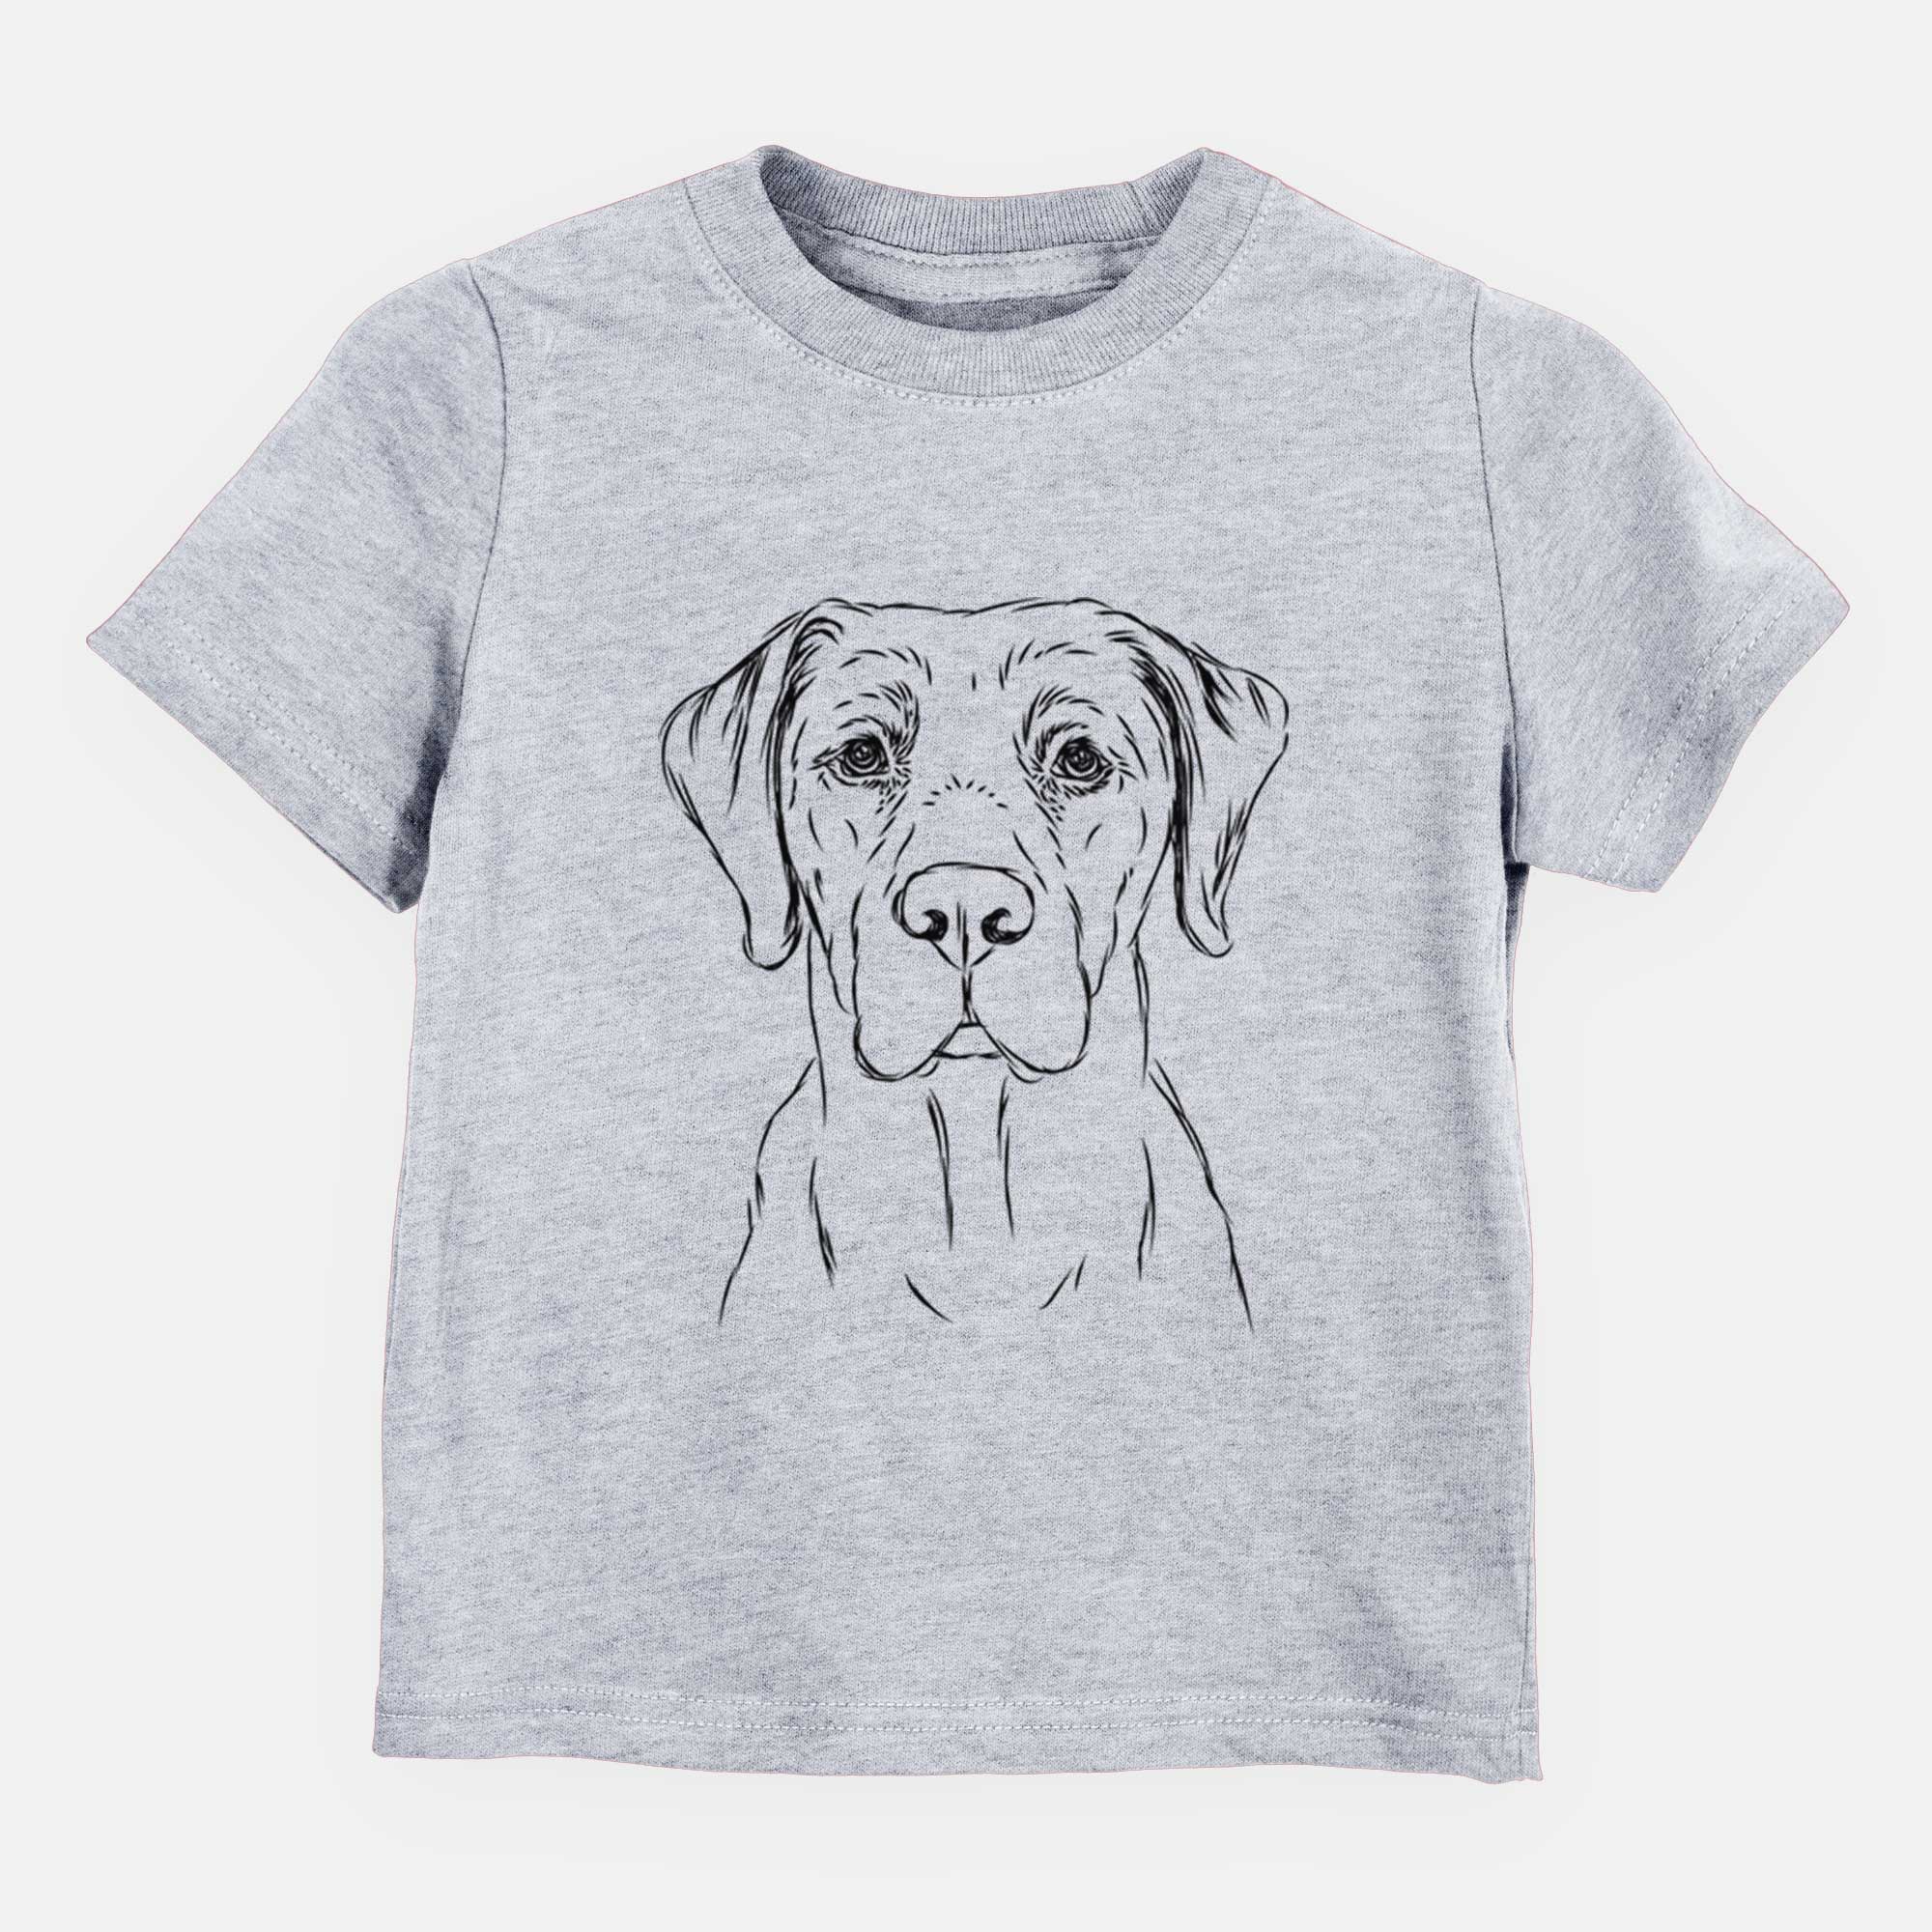 Bare Rowdy the Labrador Retriever - Kids/Youth/Toddler Shirt